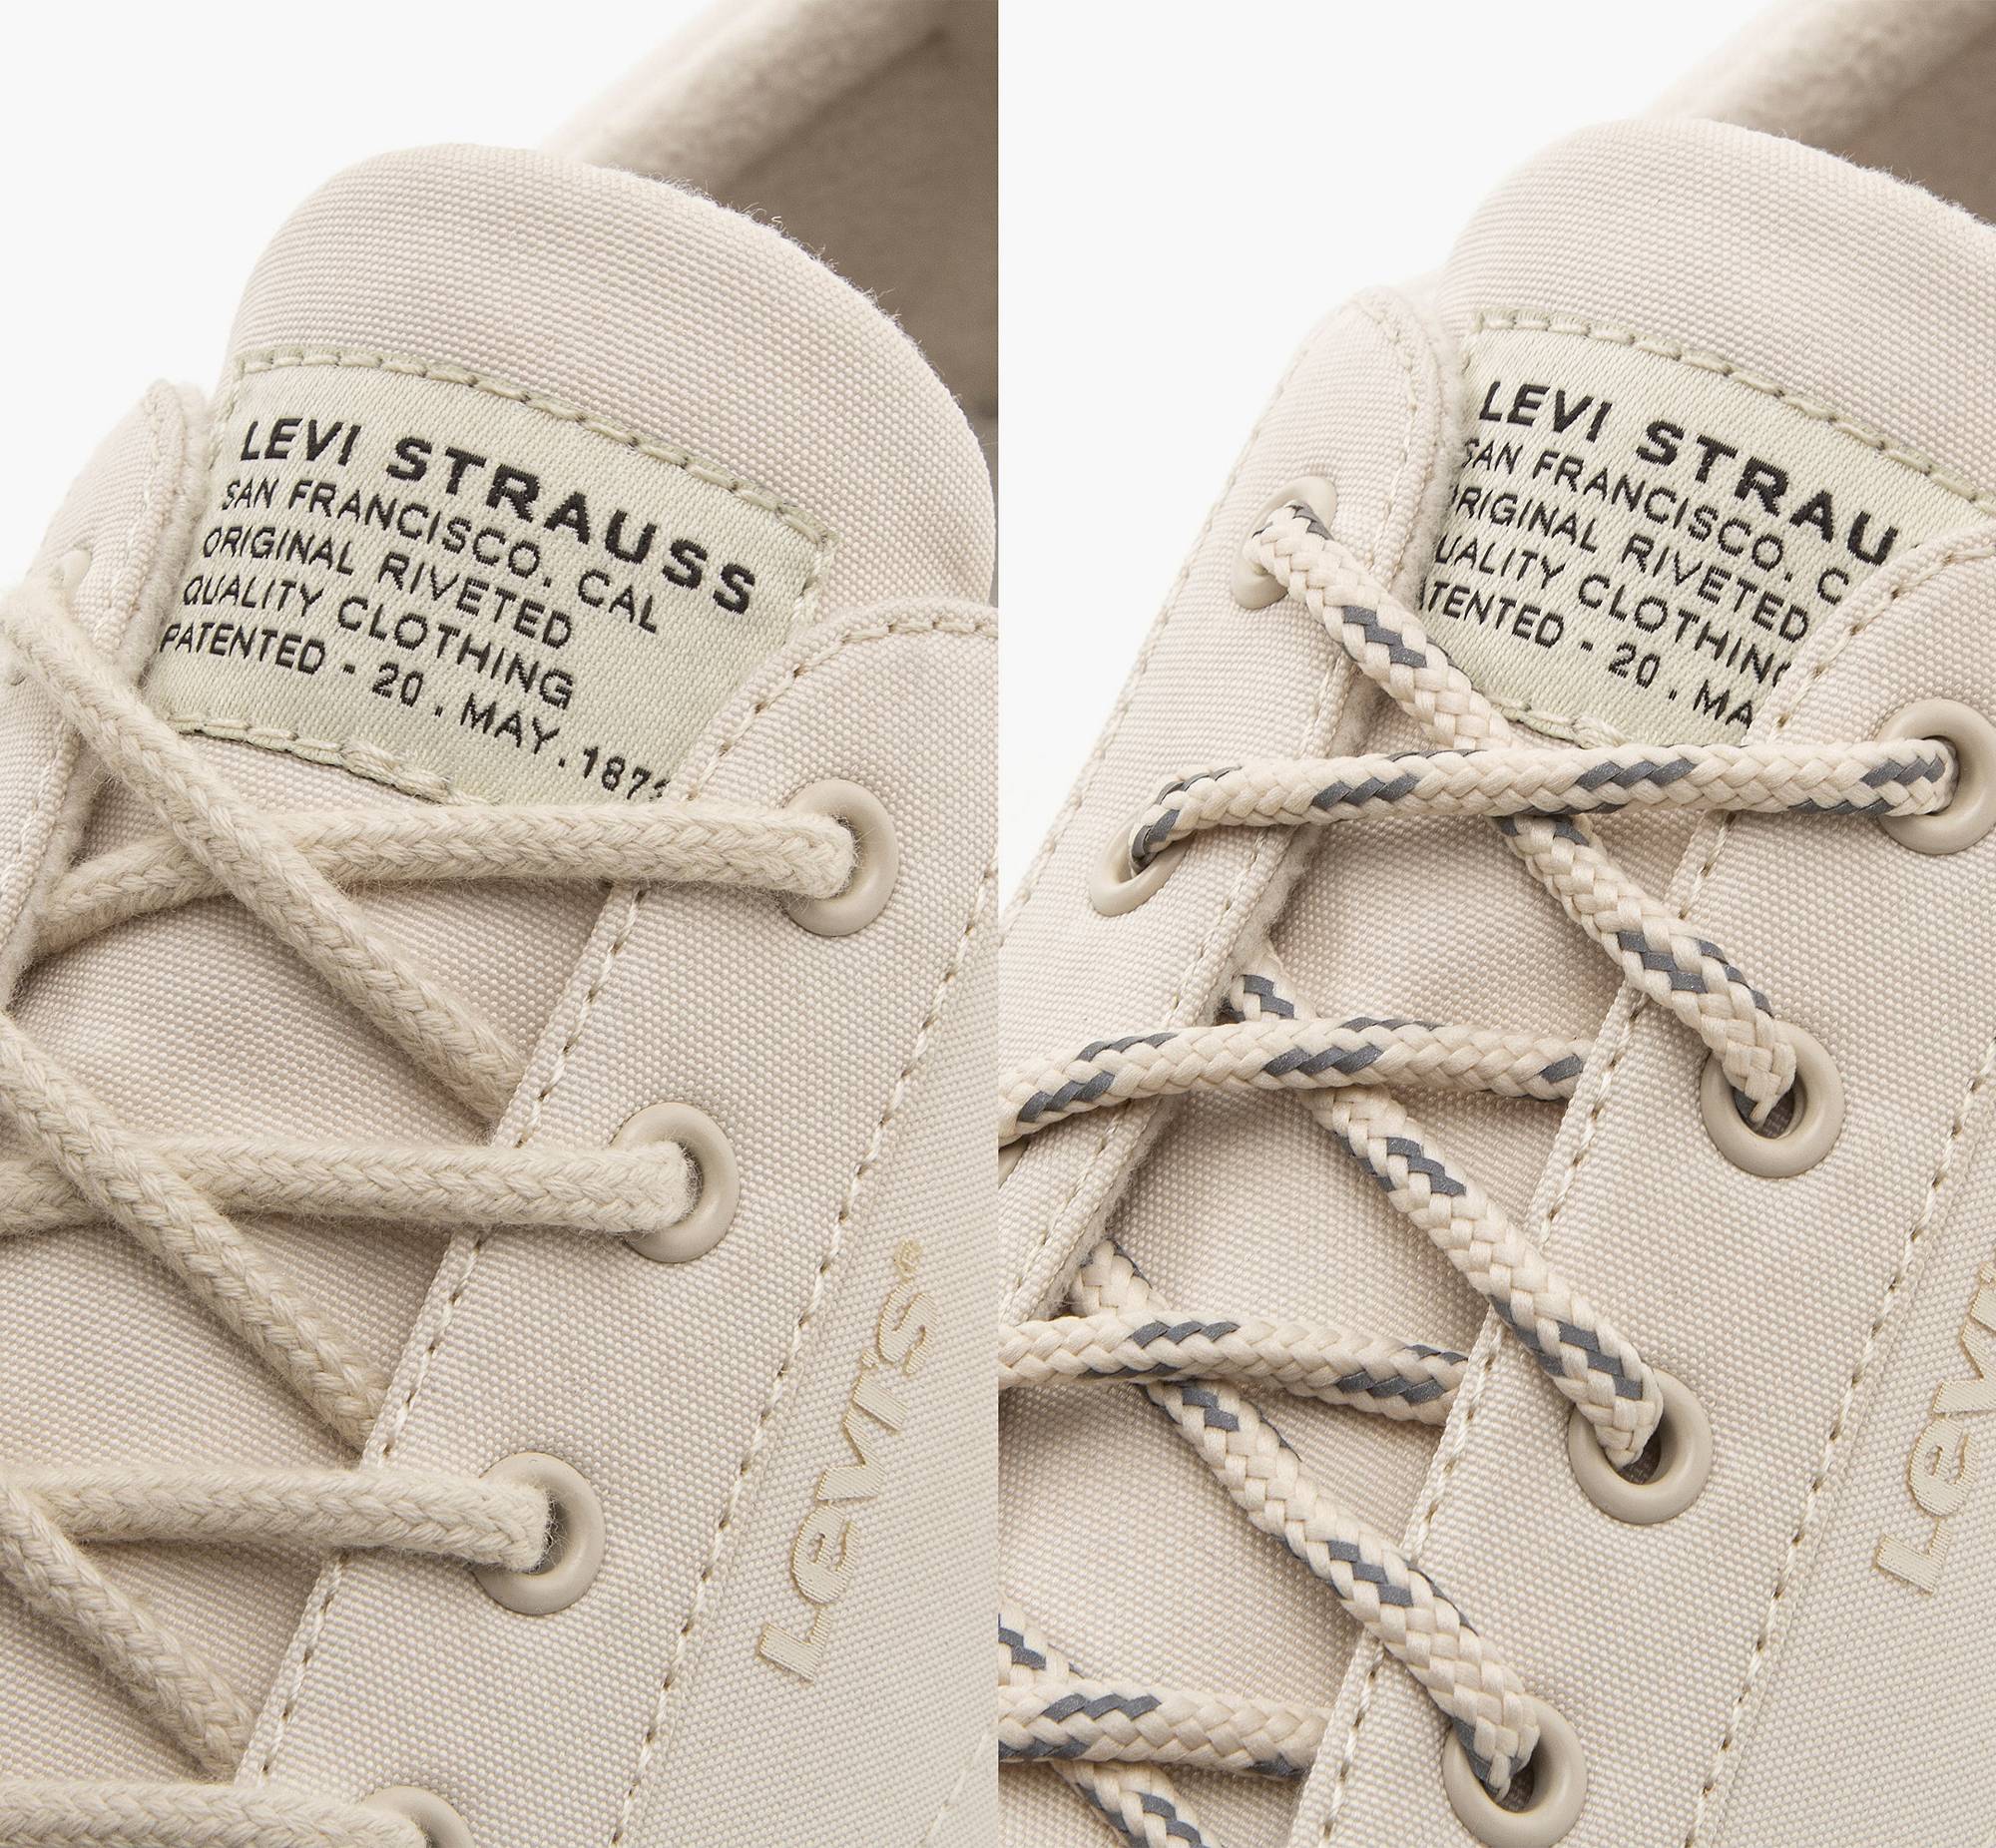 Sierra Low Sneakers 4